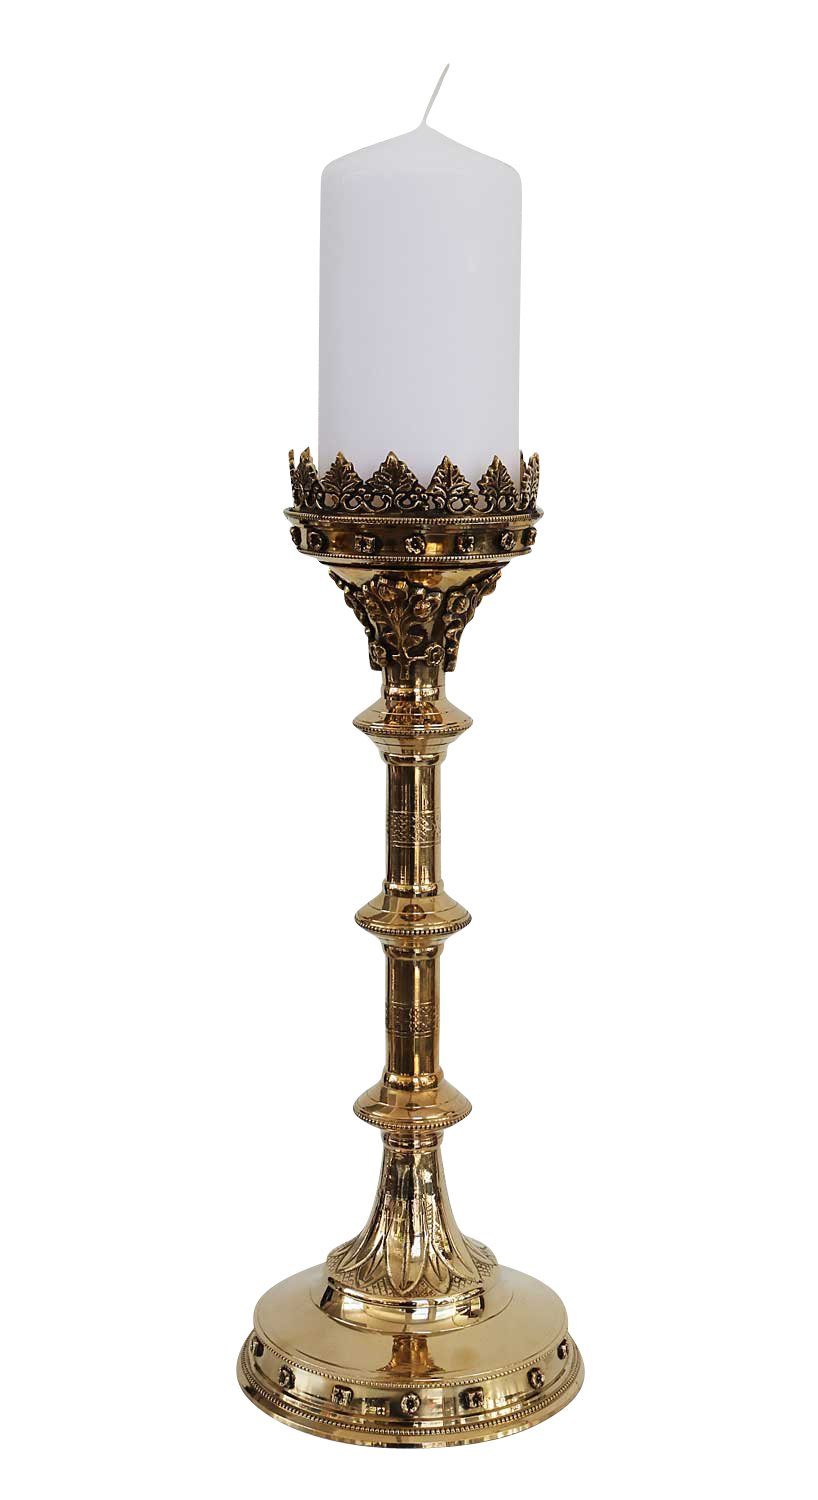 Leuchter Kerzenständer Antik-Stil Kerzenleuchter Altarleuchter Kerzenständer 47cm go Aubaho